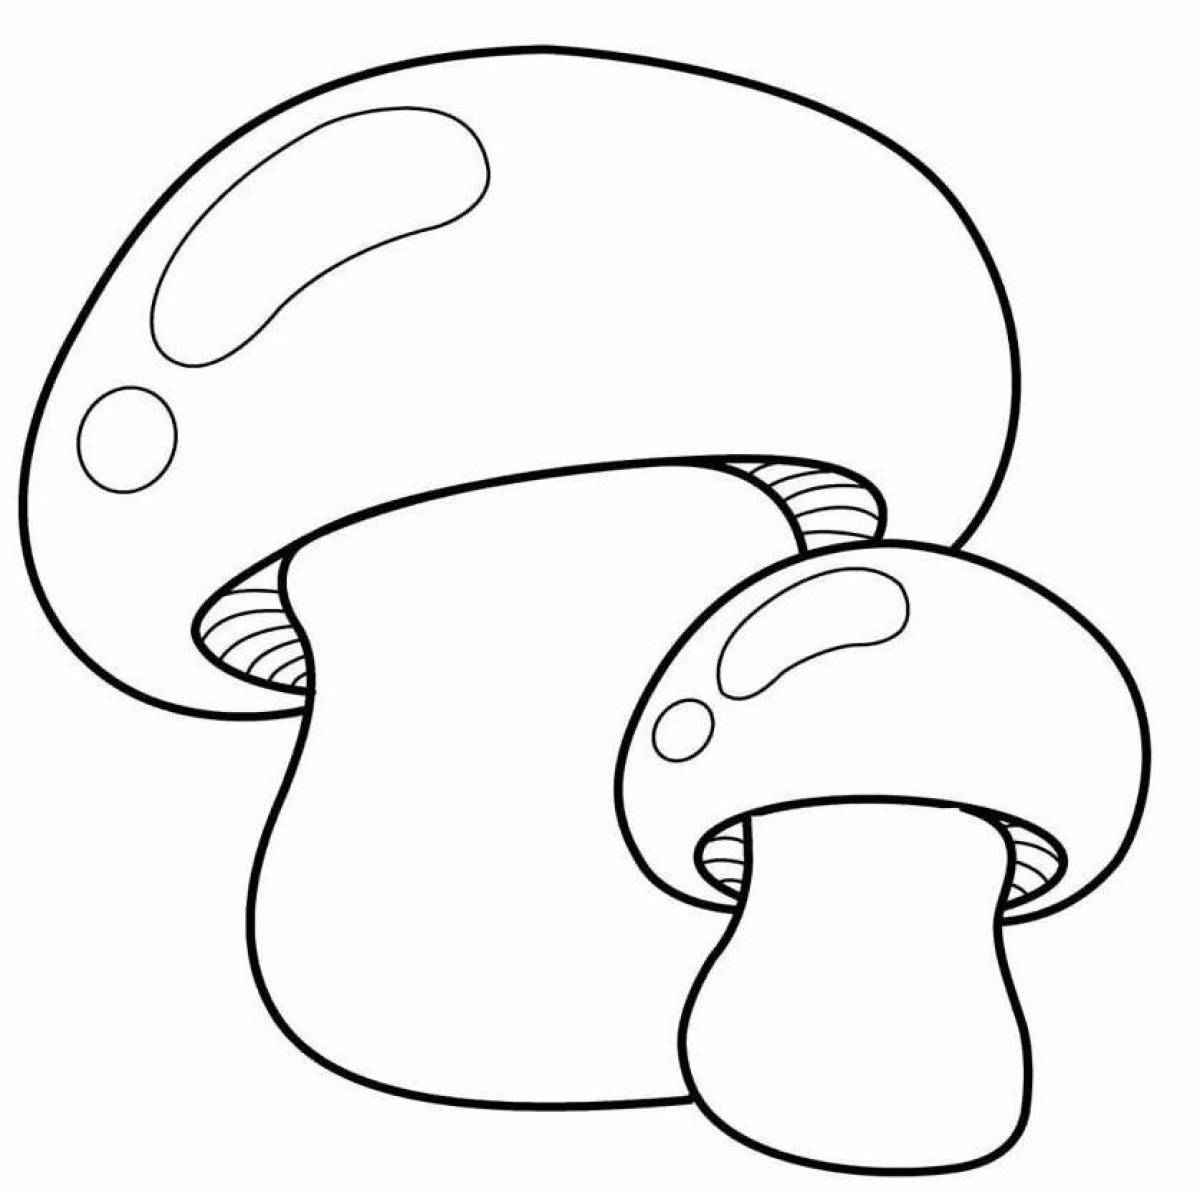 Coloring mushrooms for kids